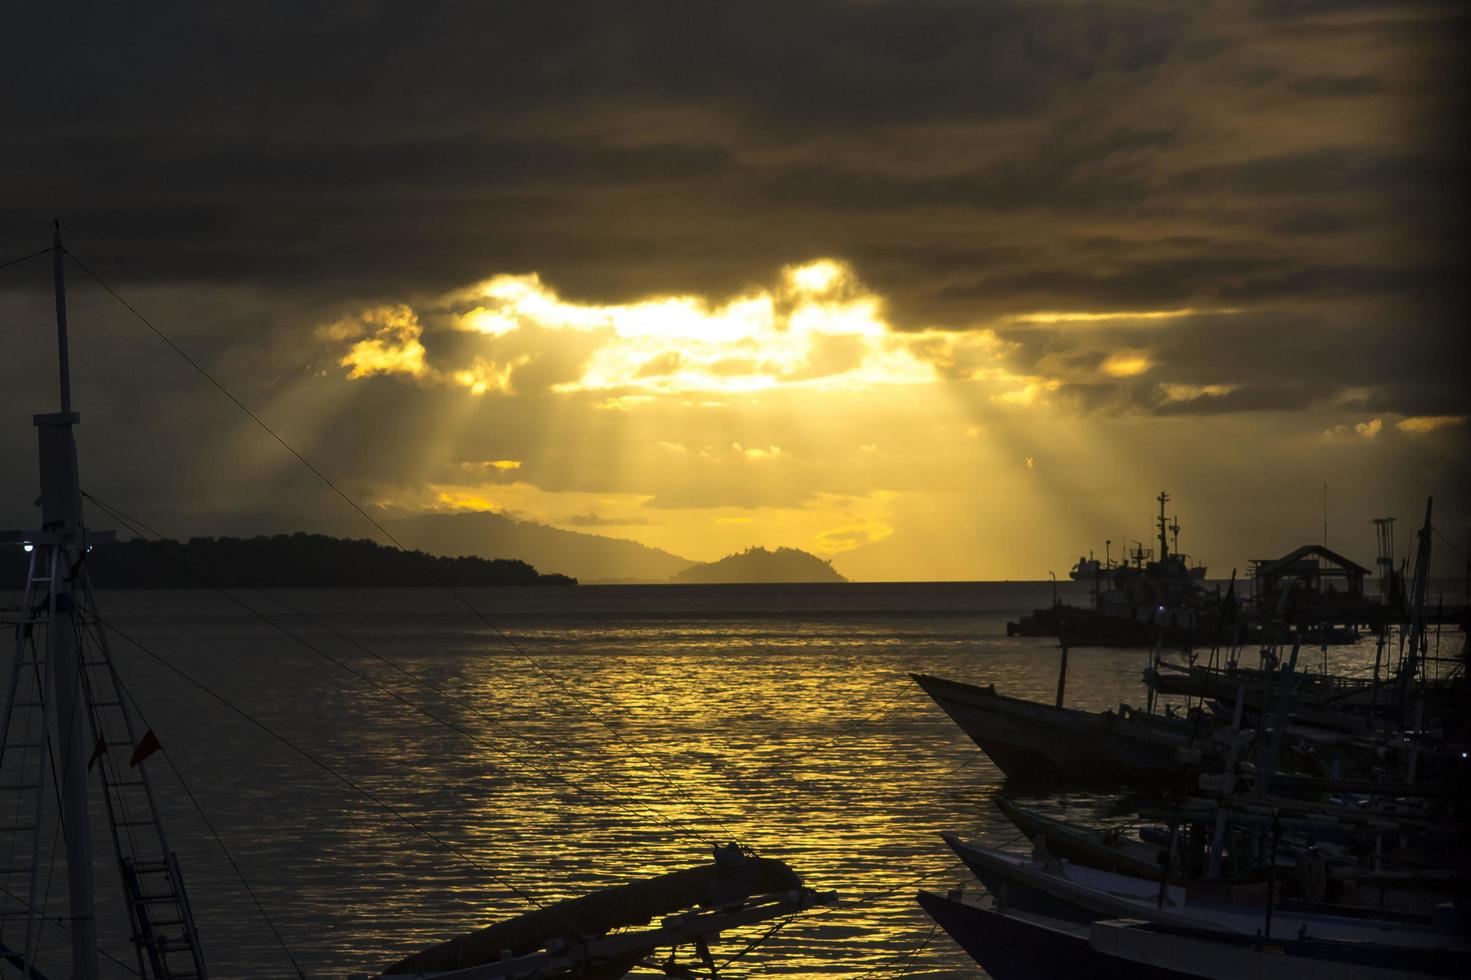 vista incrível do pôr do sol no cais de pesca foto